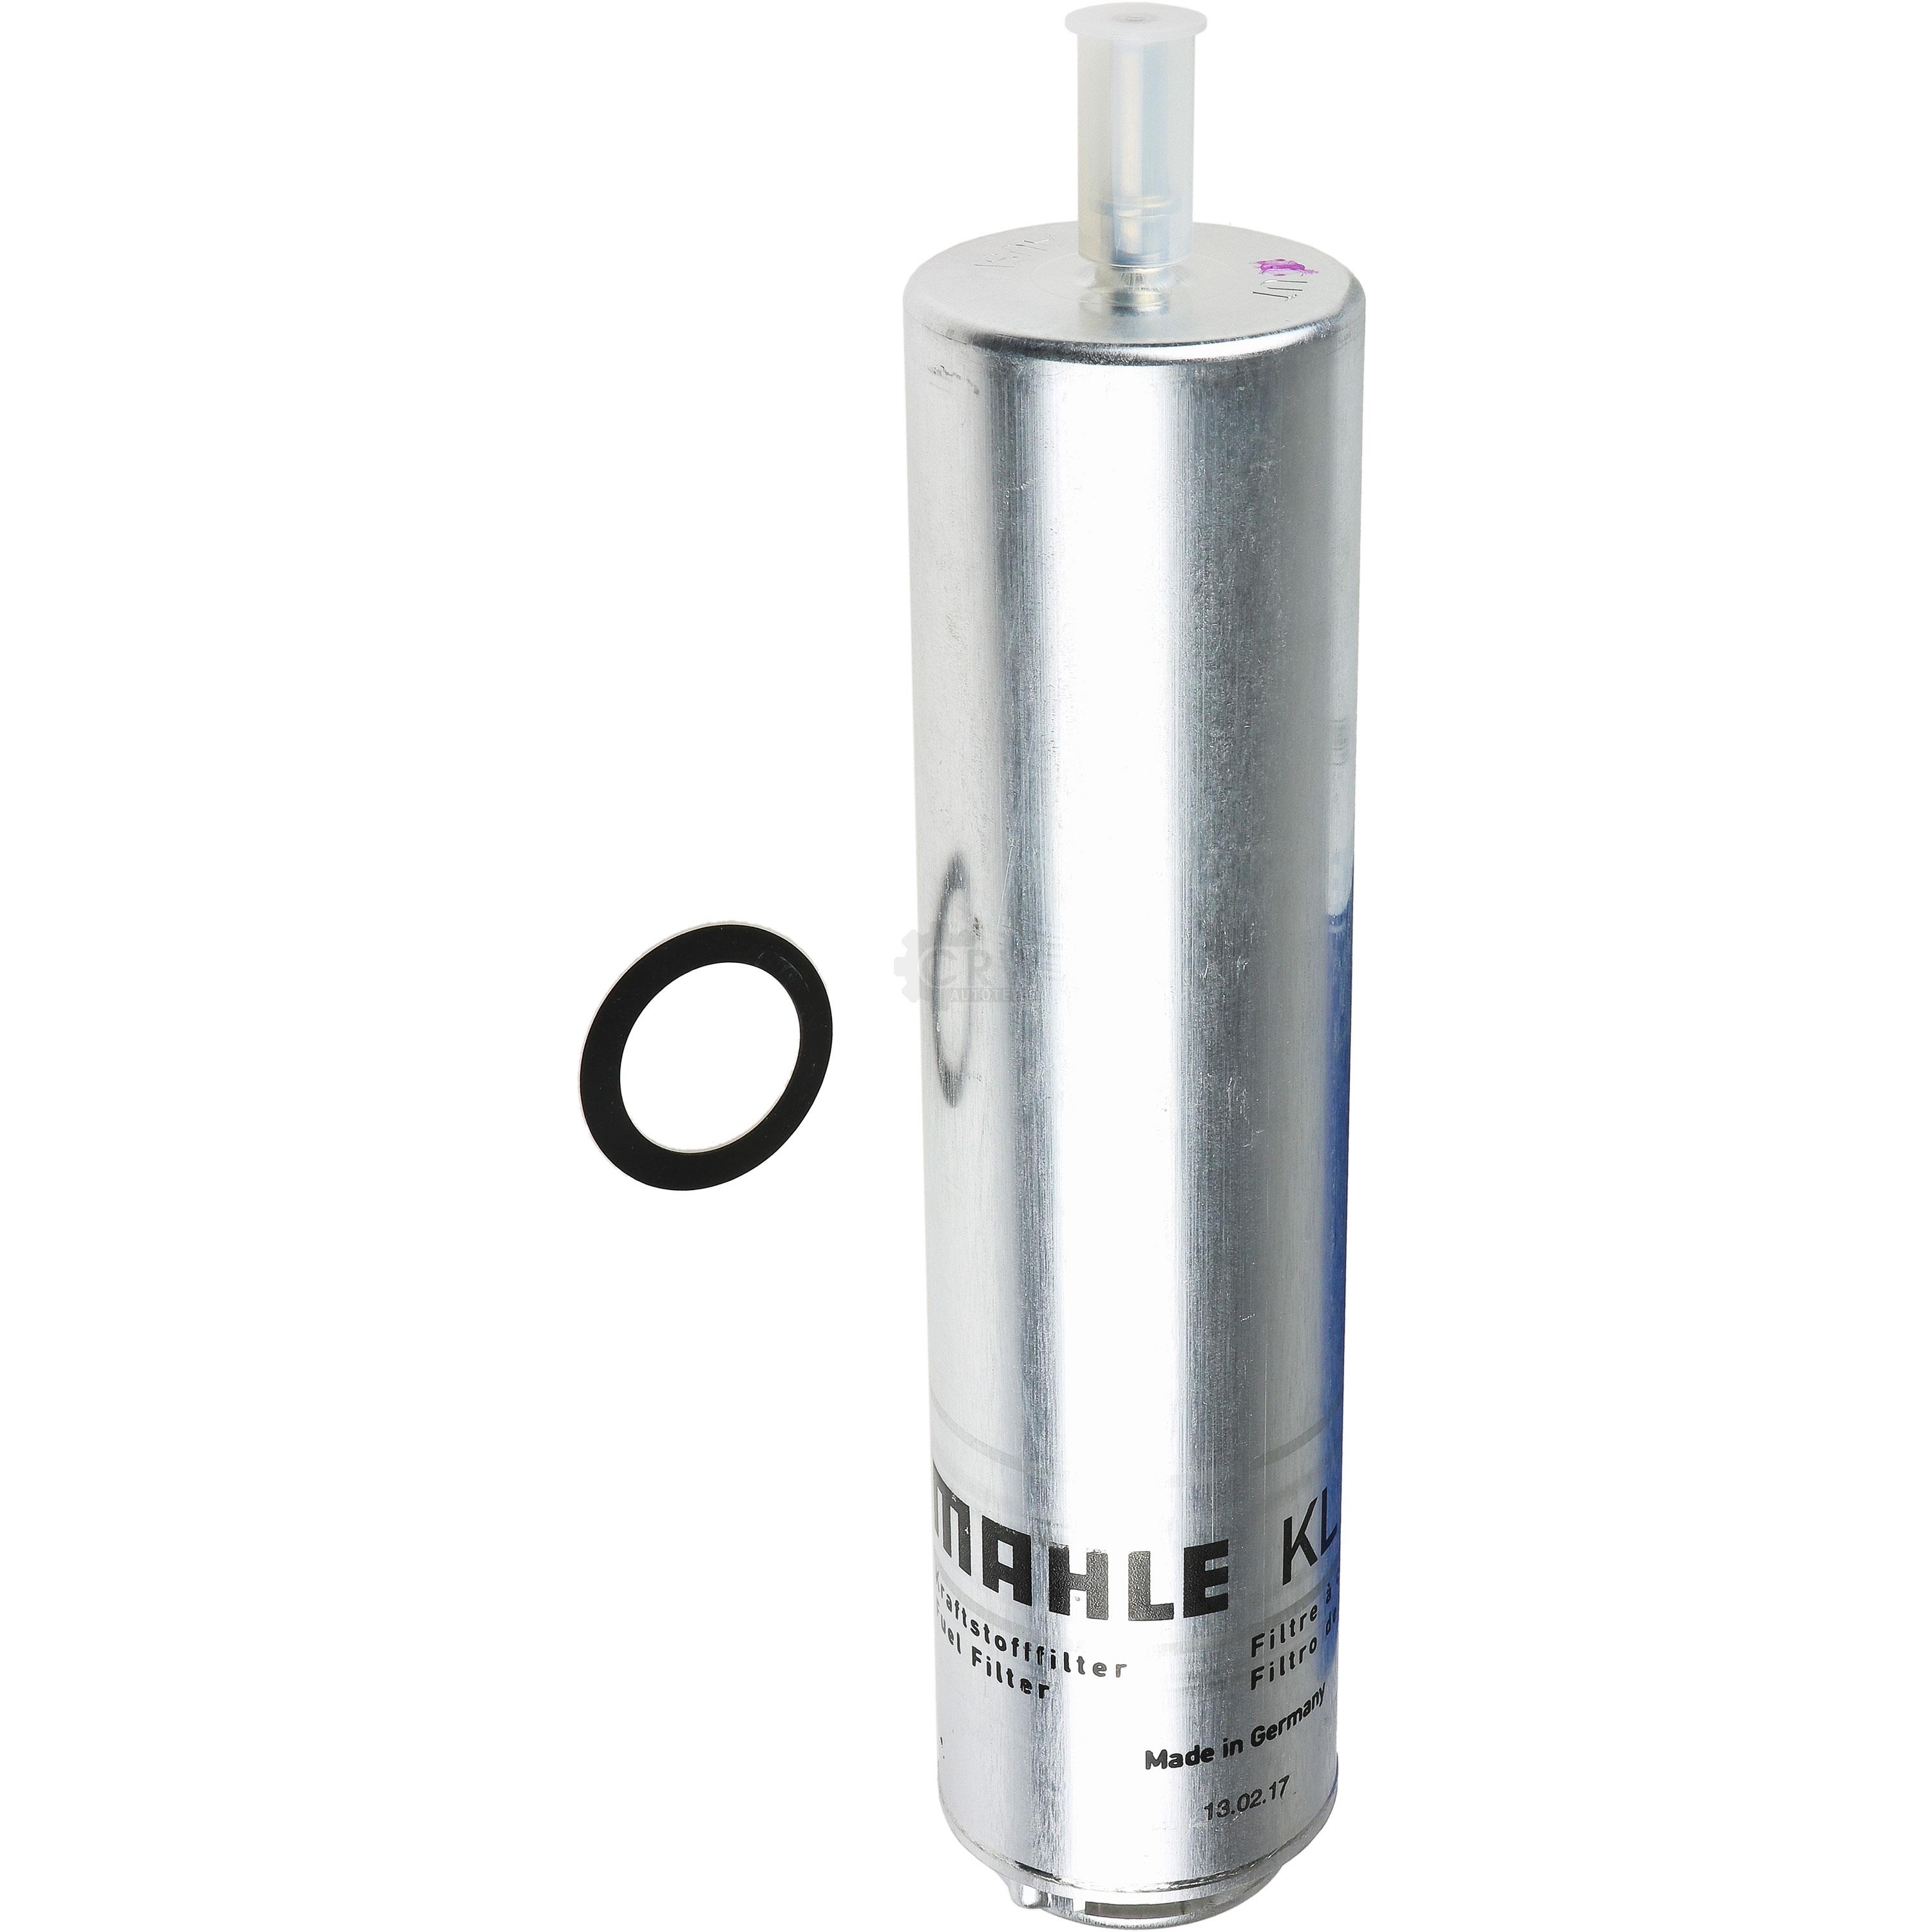 MAHLE / KNECHT Kraftstofffilter KL 736/1D Fuel Filter